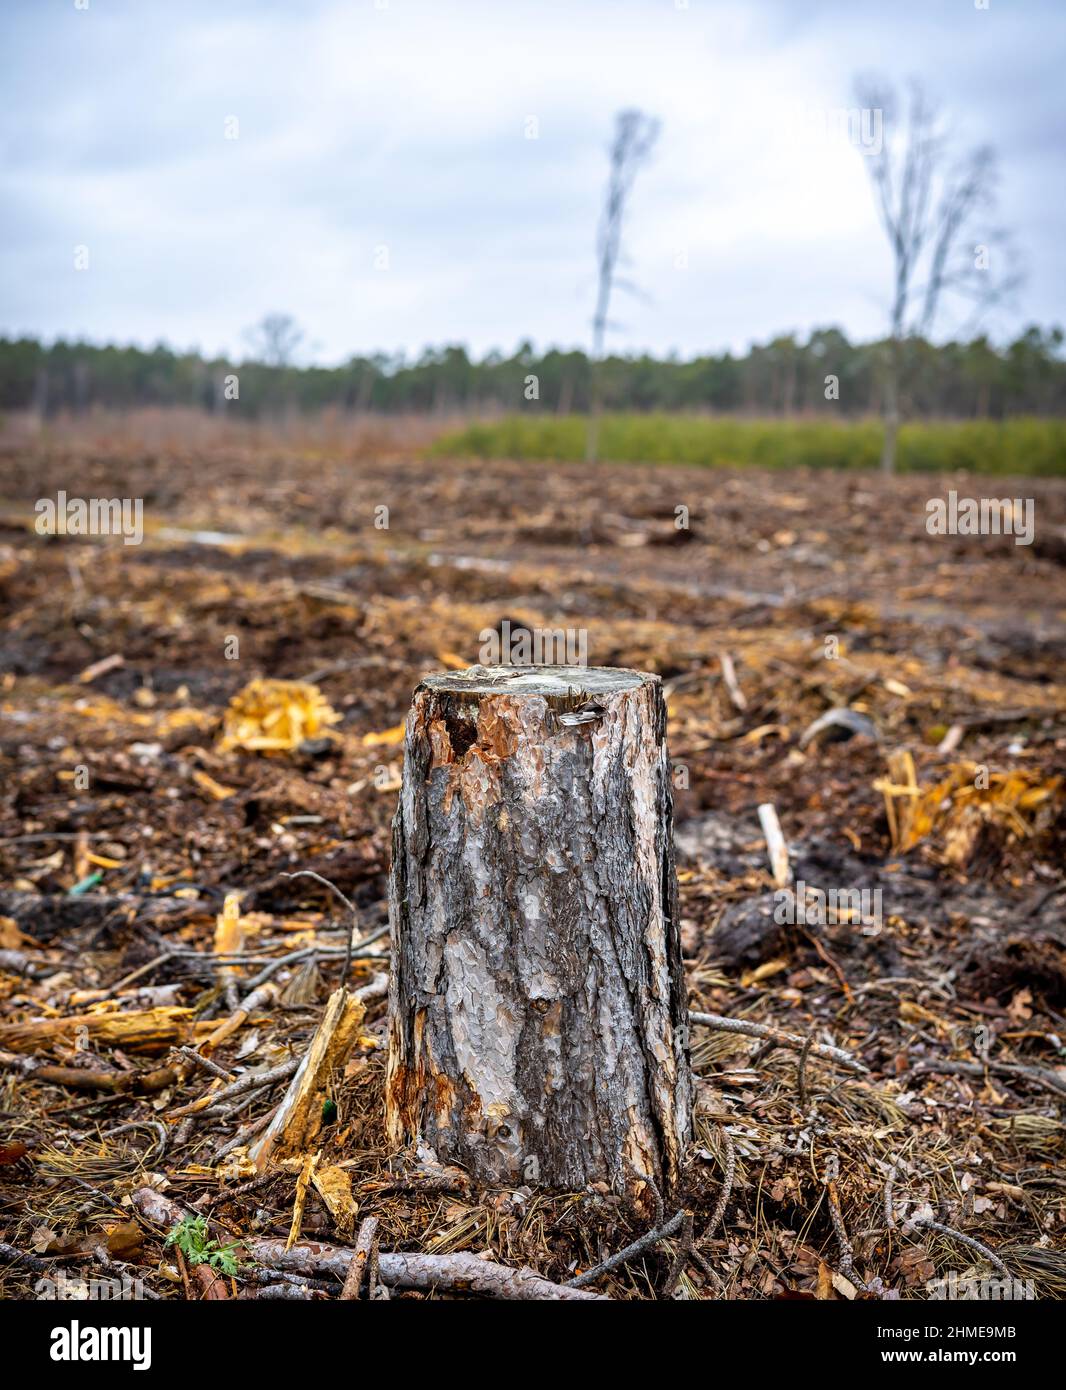 Ein Kiefernstumpf auf dem Hintergrund eines geschnittenen Waldes. Das Foto wurde an einem bewölkten Tag aufgenommen. Tageslicht. Stockfoto